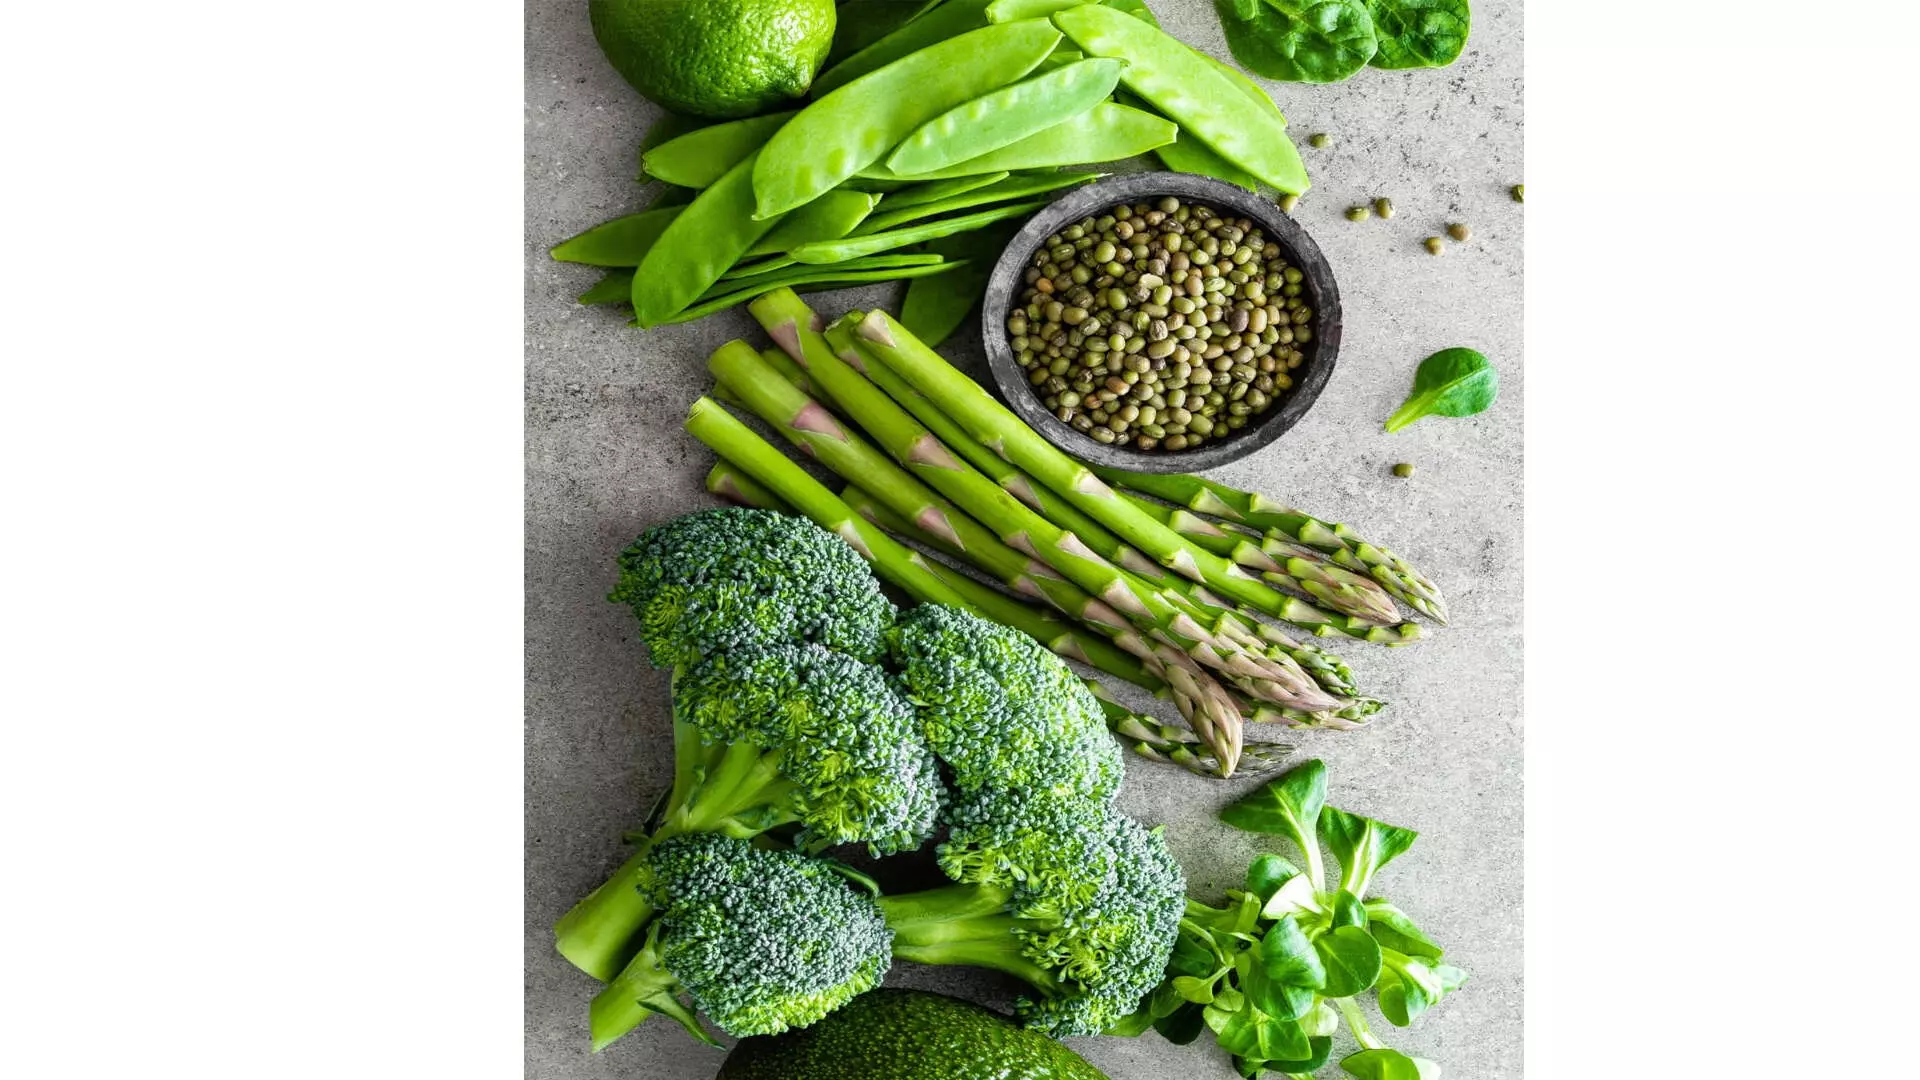 Green Vegetables: गर्मियों में खूब खाएं ये 5 हरी सब्जियां, बीमारियां रहेंगी कोसों दूर